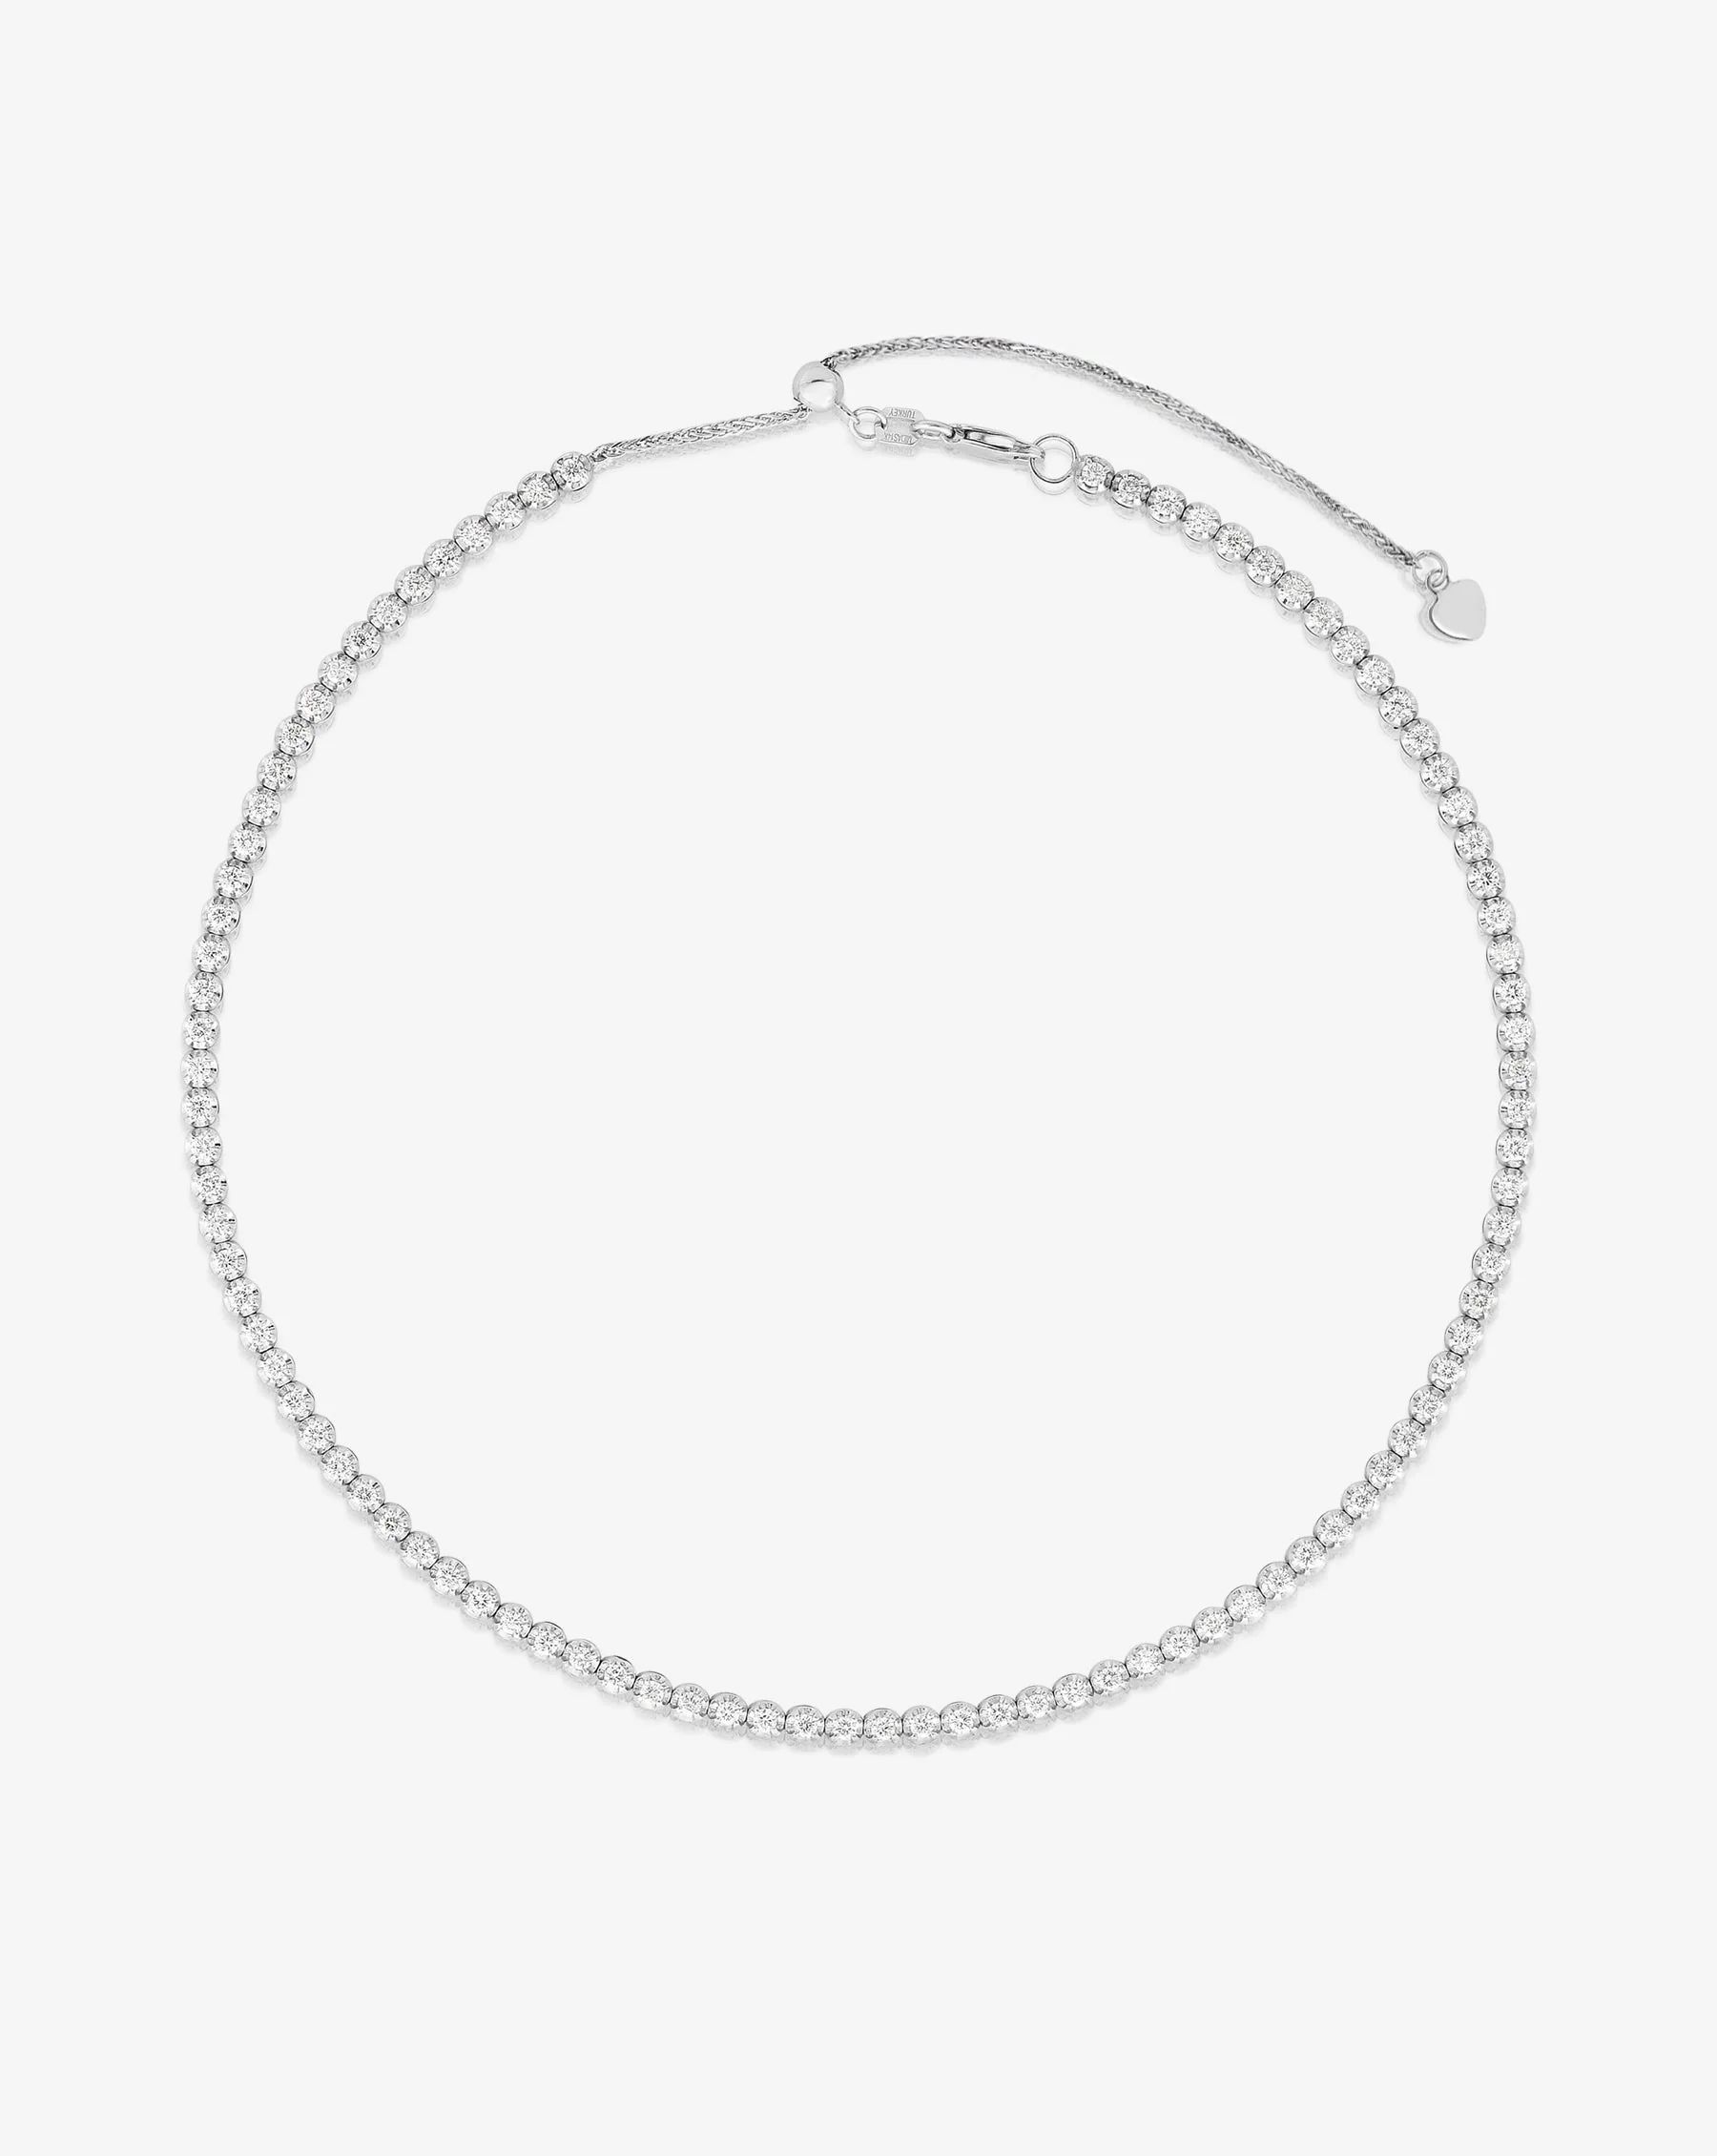 Multiway Tennis Necklace + Double Wrap Bracelet | Ring Concierge